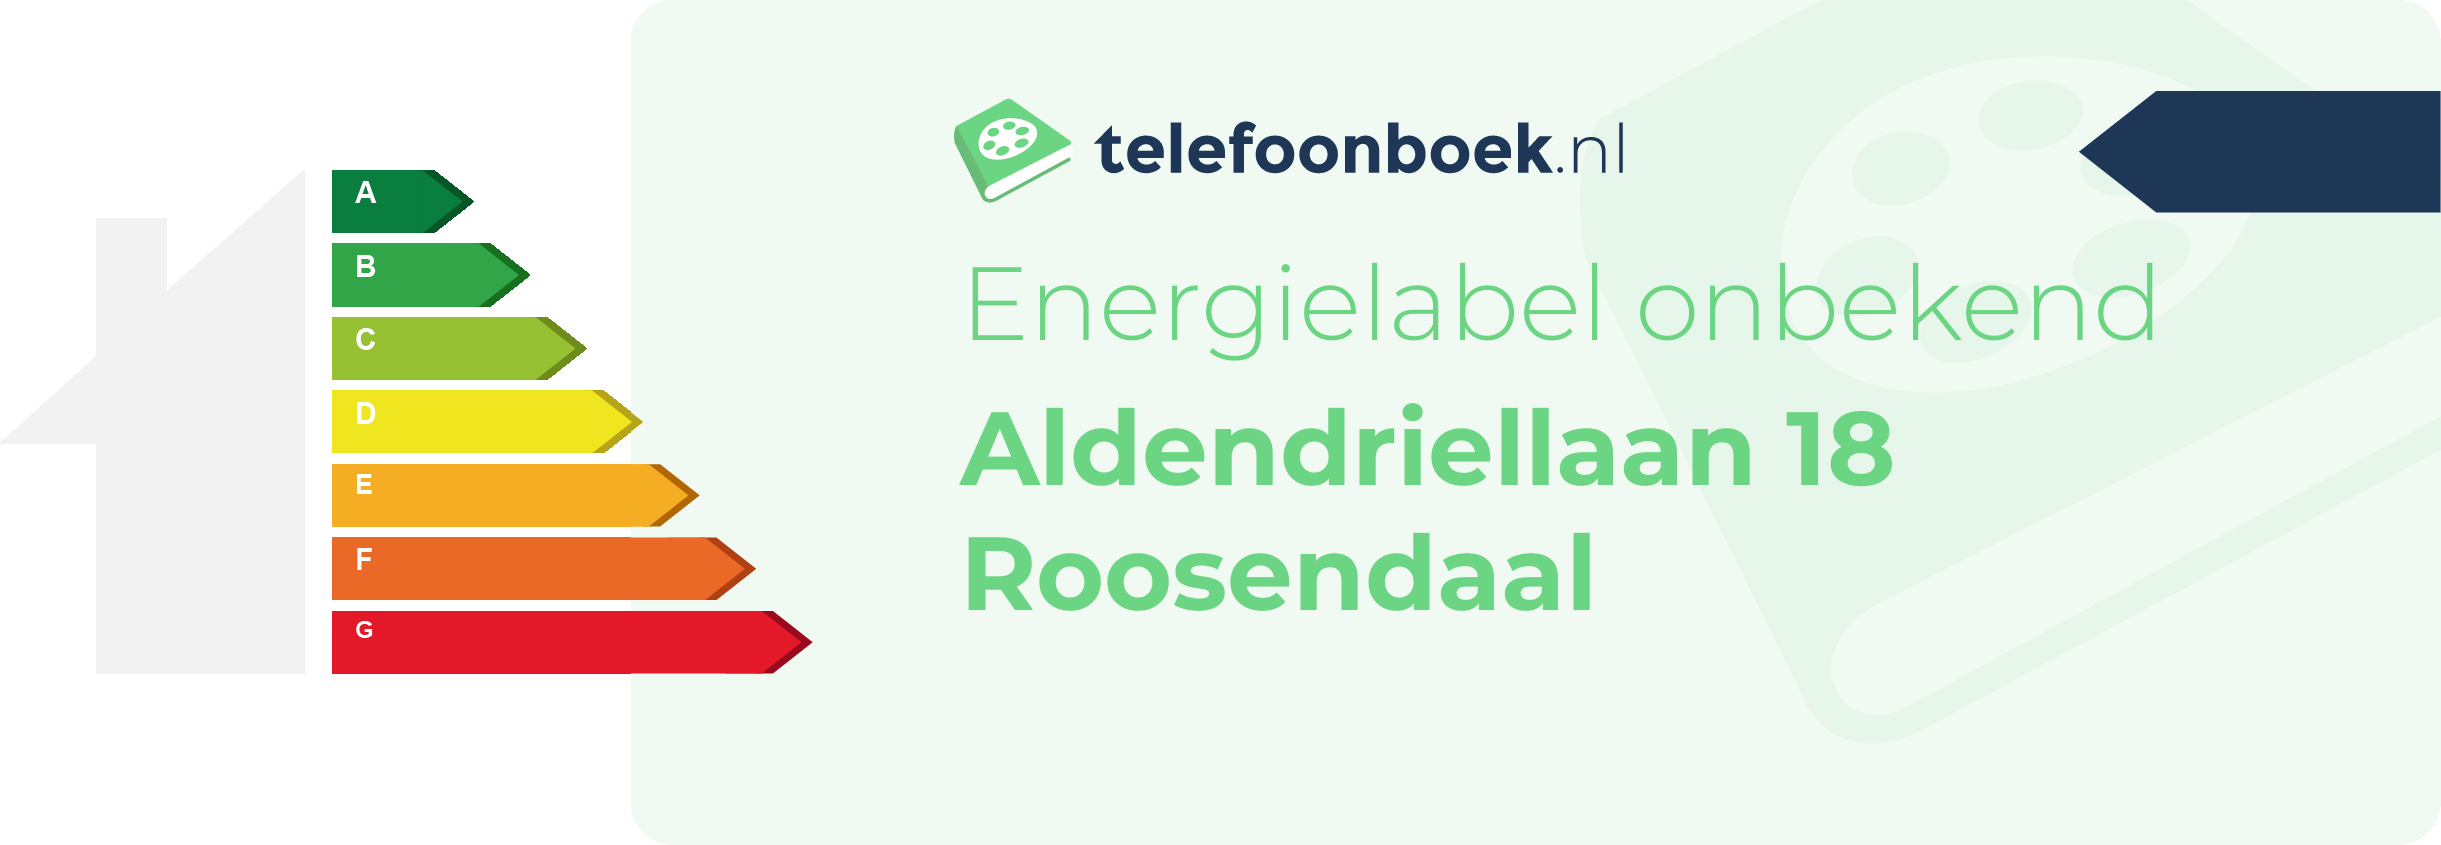 Energielabel Aldendriellaan 18 Roosendaal